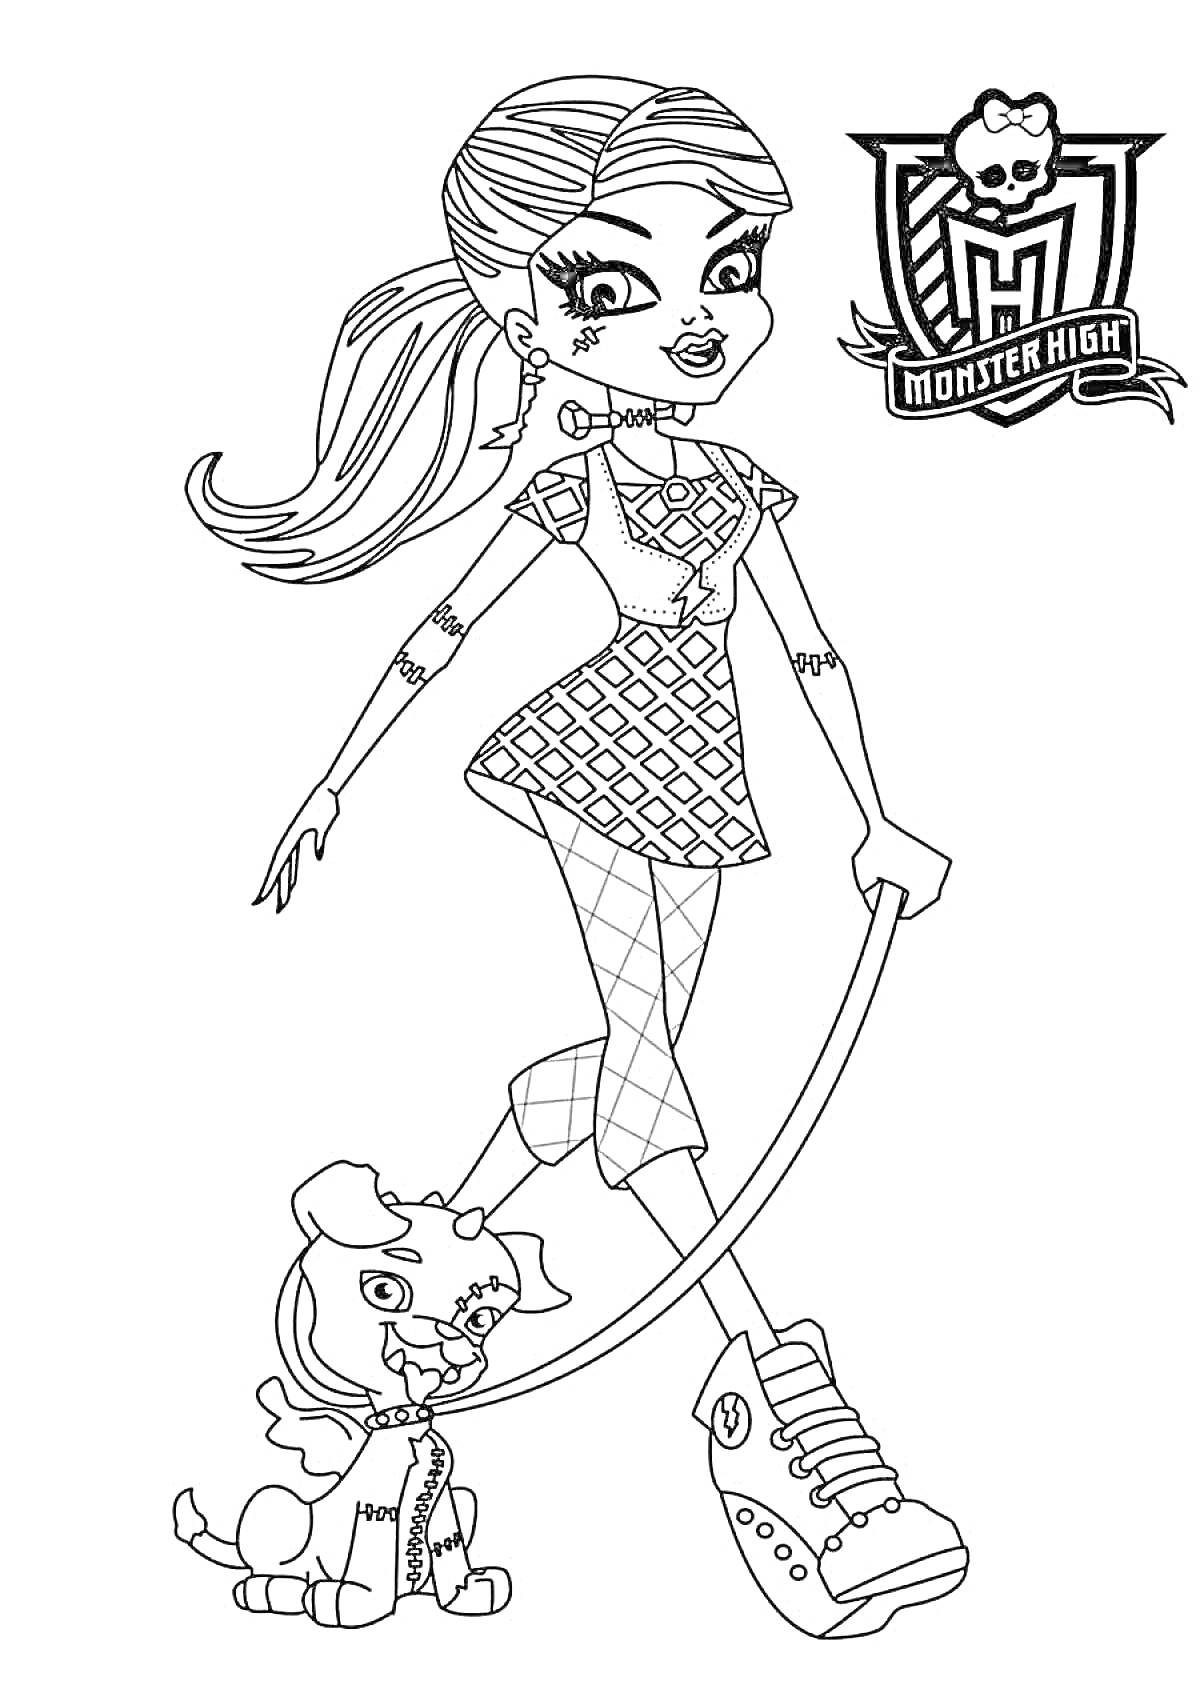 Девочка-Монстр Хай с прической в хвосте, в платье с геометрическим узором и сетчатыми колготками, выгуливающая питомца на поводке, с логотипом Monster High в углу